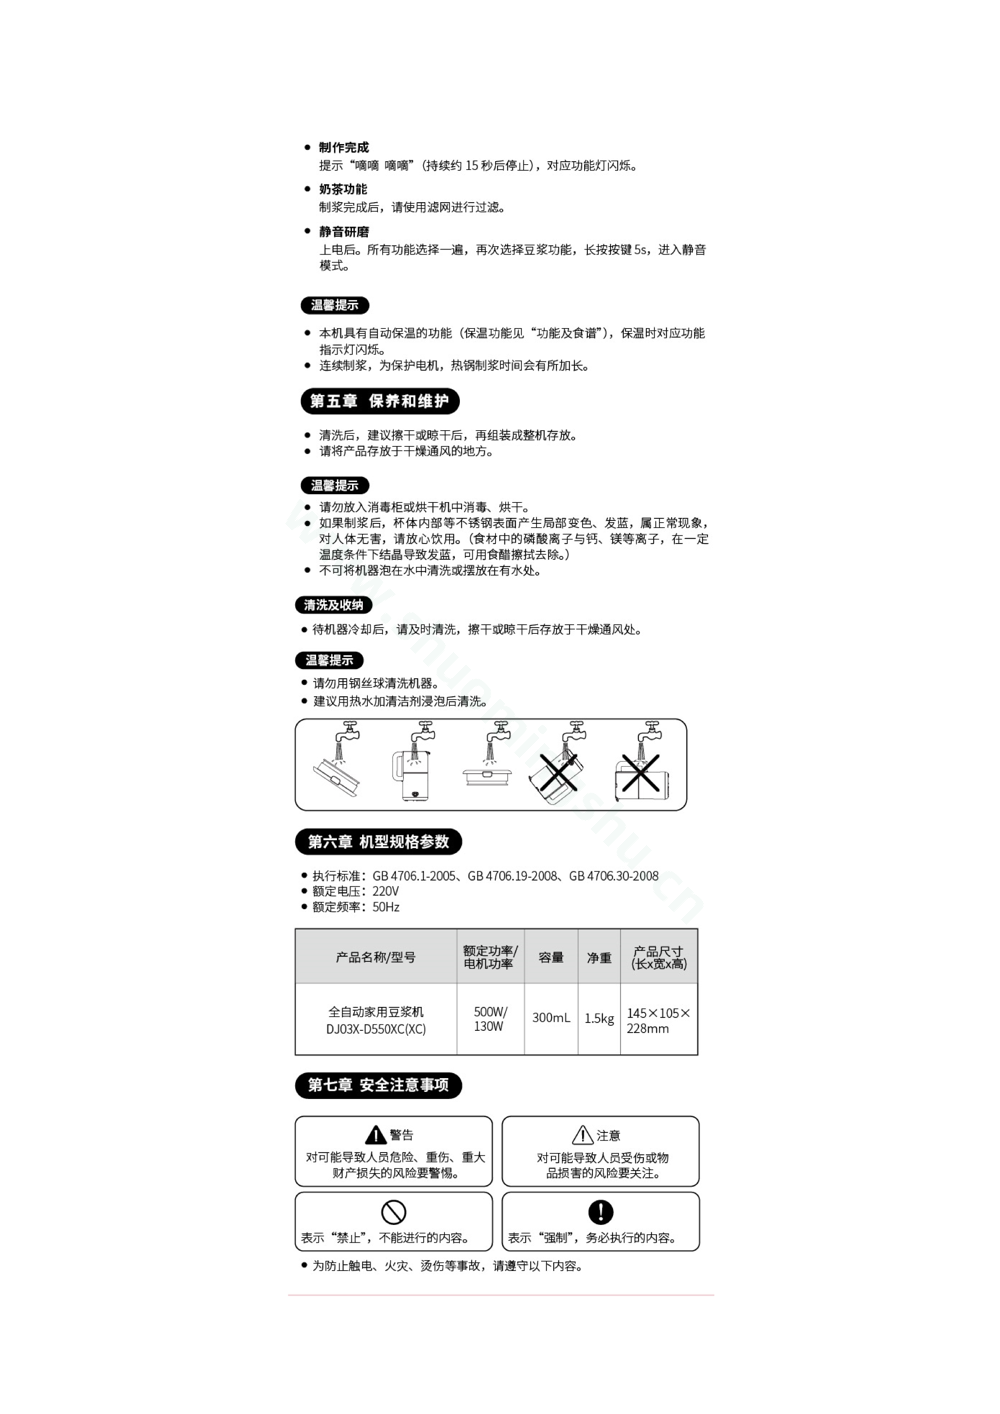 九阳豆浆机DJ03X-D550XC(XC)说明书第4页